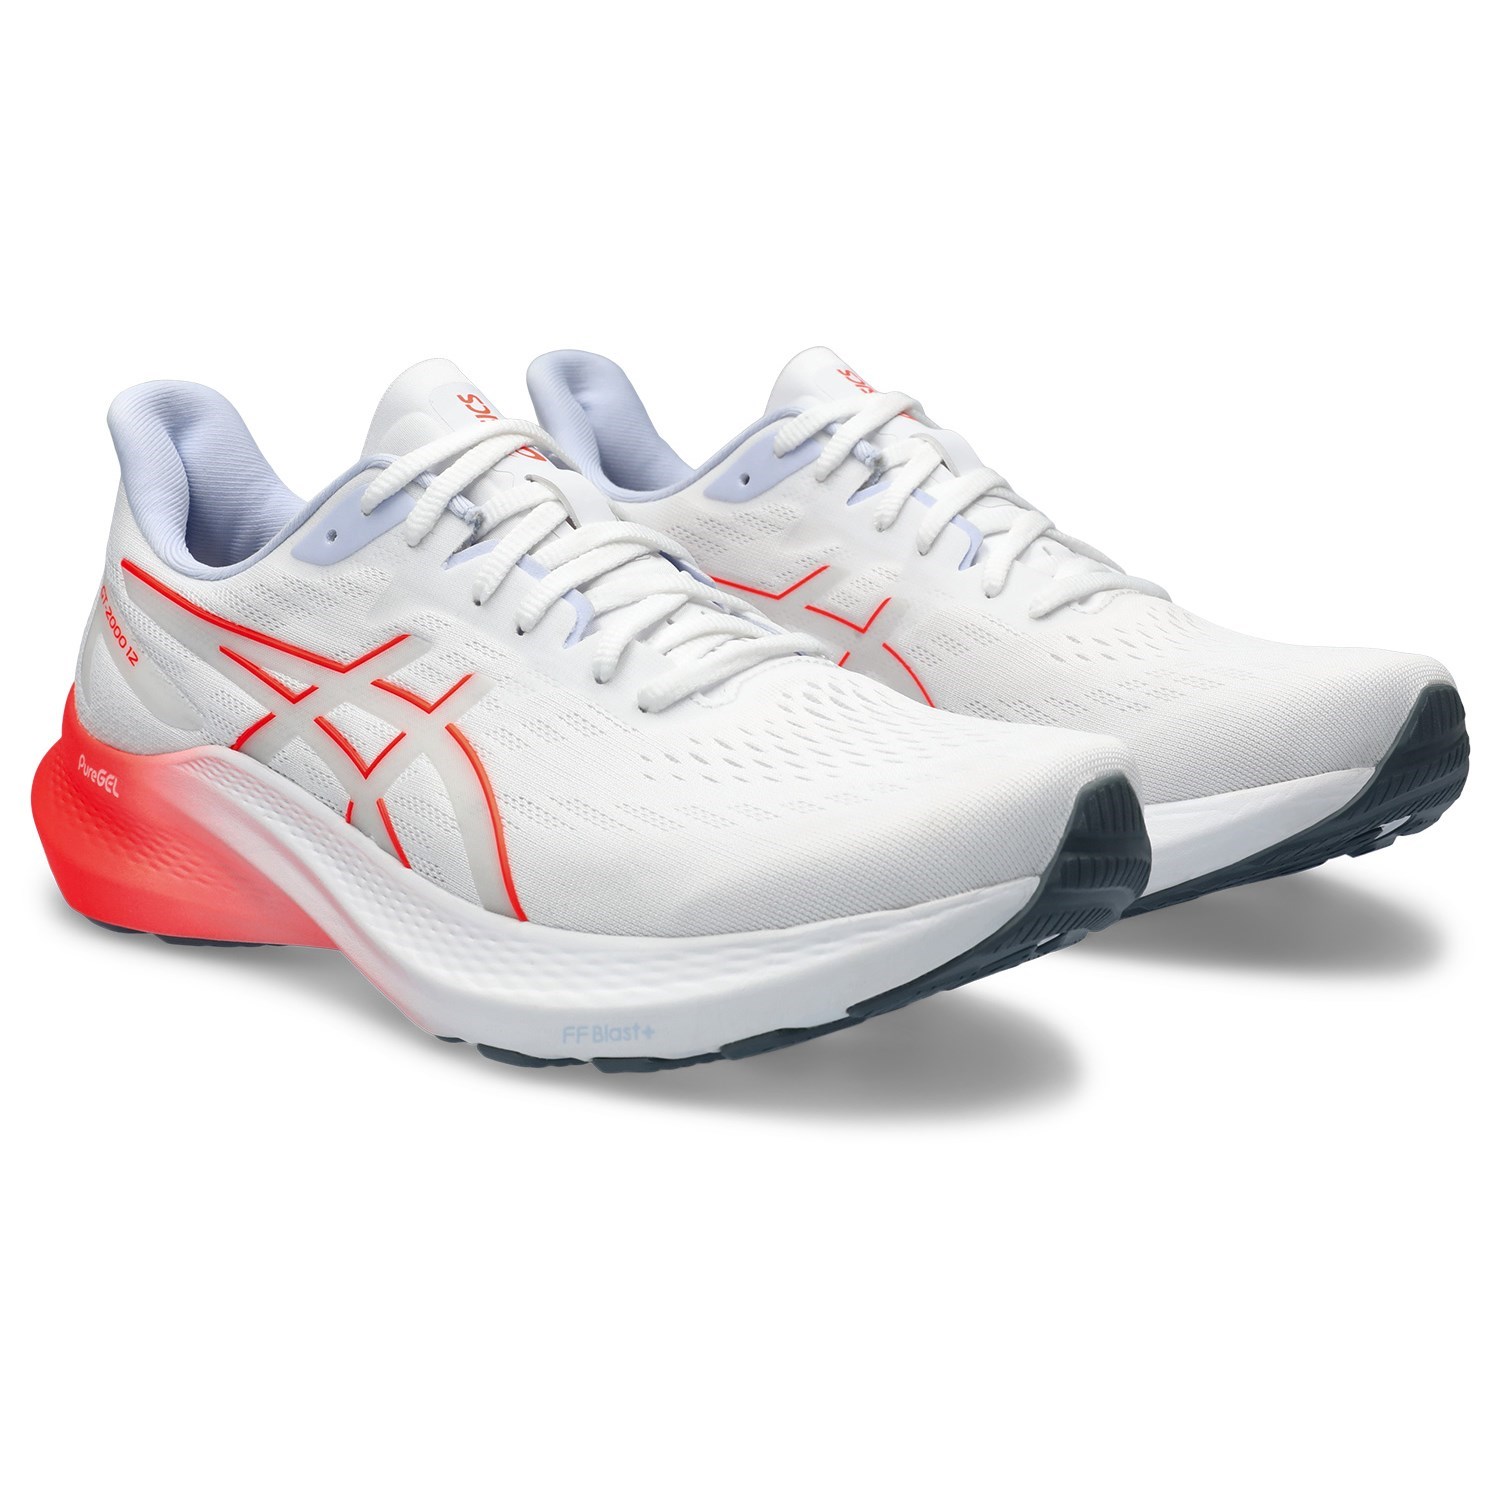 Asics GT-2000 12 - Mens Running Shoes - White/Sunrise Red | Sportitude